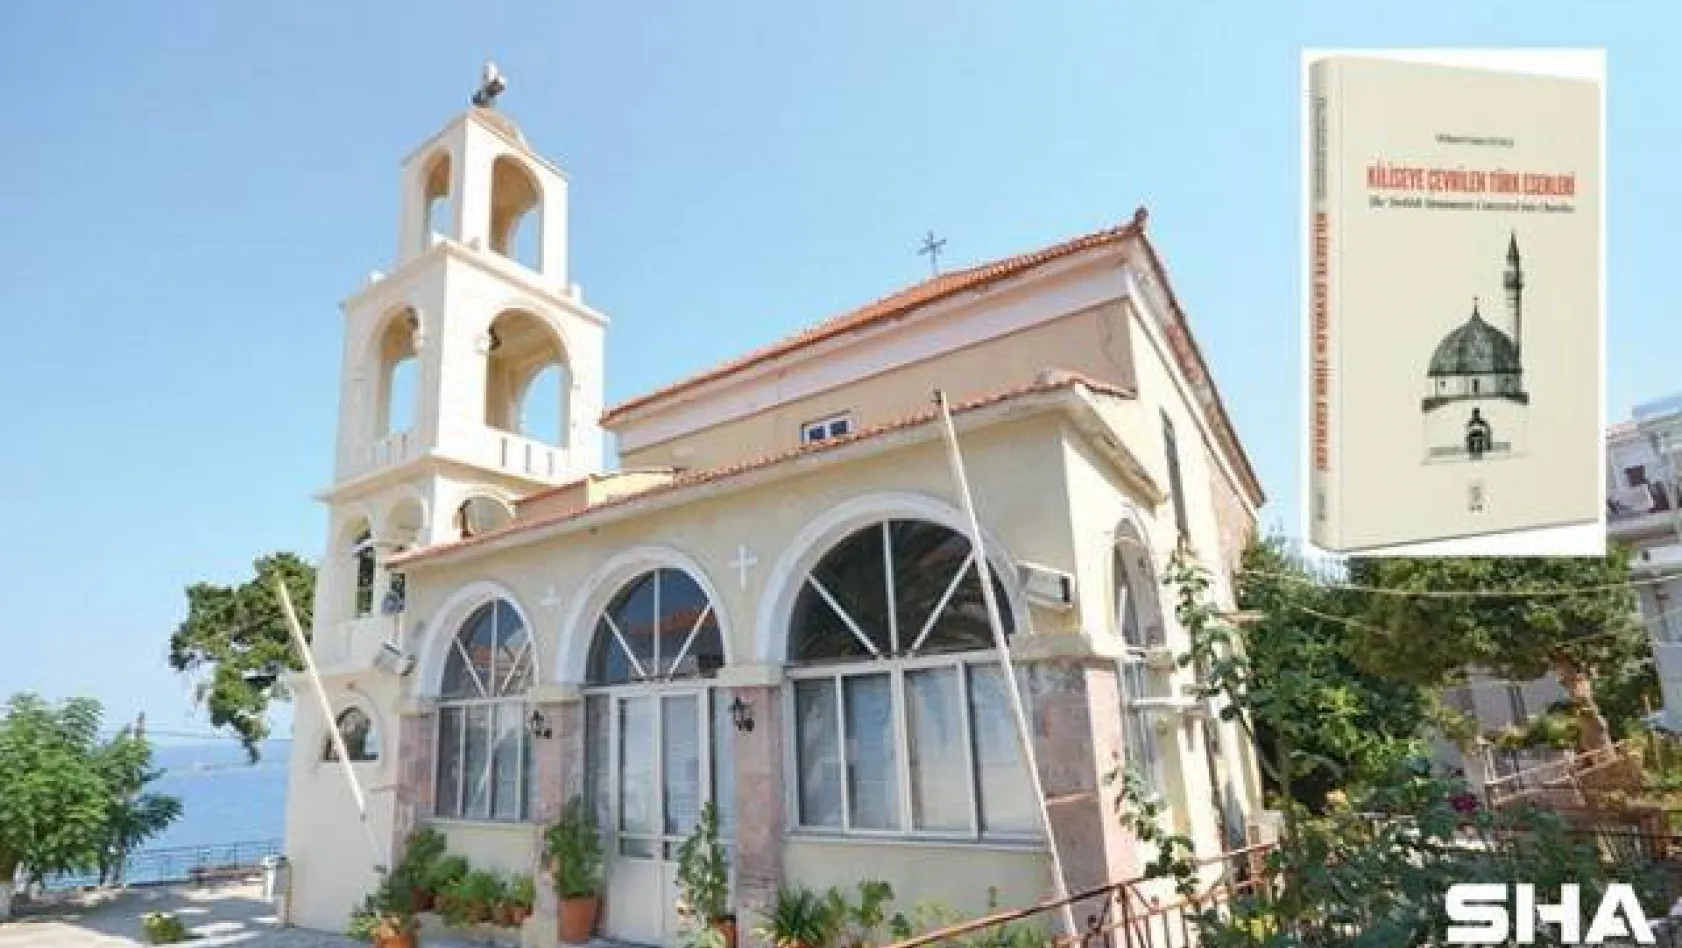 Yüzlerce Türk eserinin 'kilise'ye çevrildiği ortaya çıktı